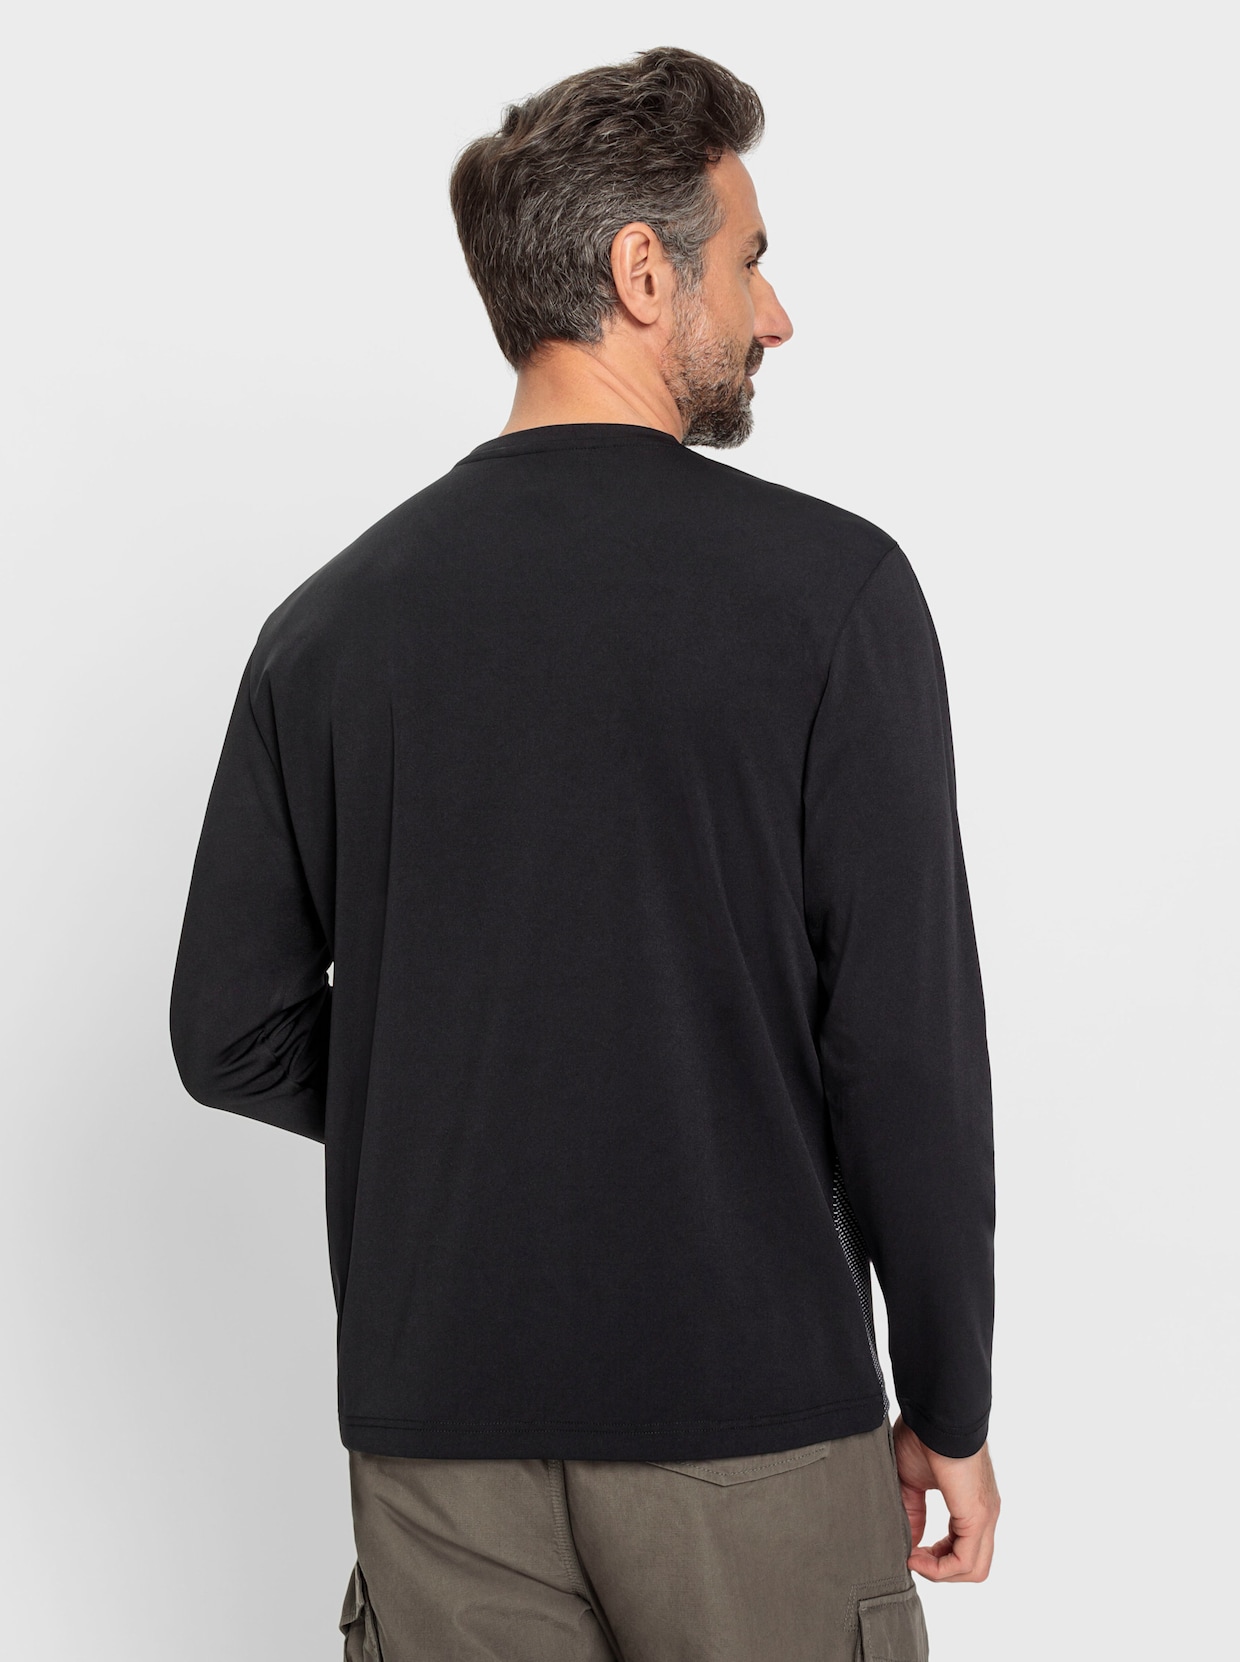 Catamaran Sports Funktions-Shirt - schwarz-steingrau-bedruckt